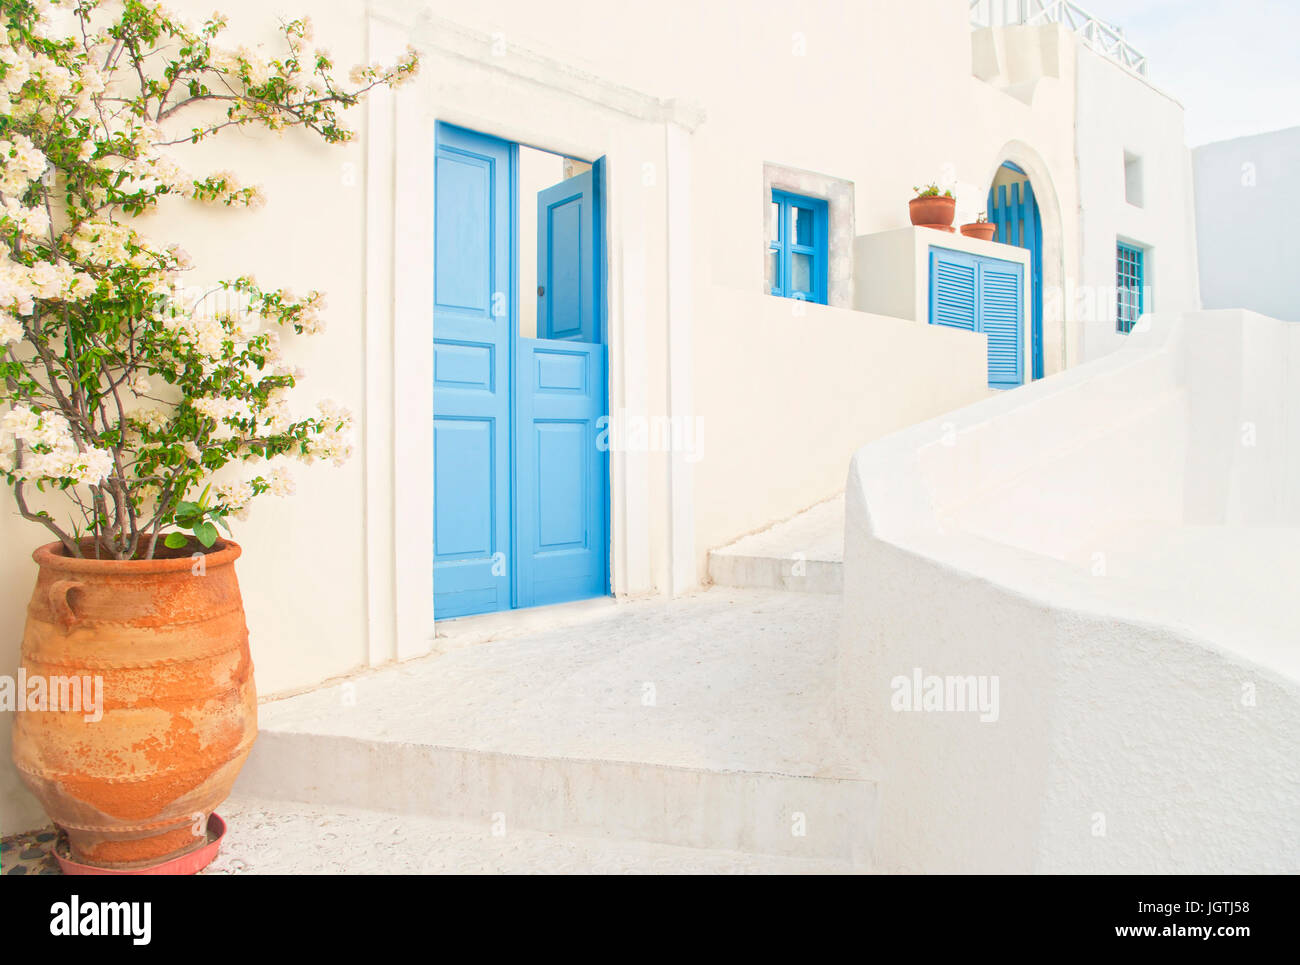 Blick auf kleine Straße mit traditionellen griechischen weiße Gebäude mit blauen Türen und Fenstern und Blumentopf im Vordergrund an Frühlingstag, Oia, Santorini, Gr Stockfoto